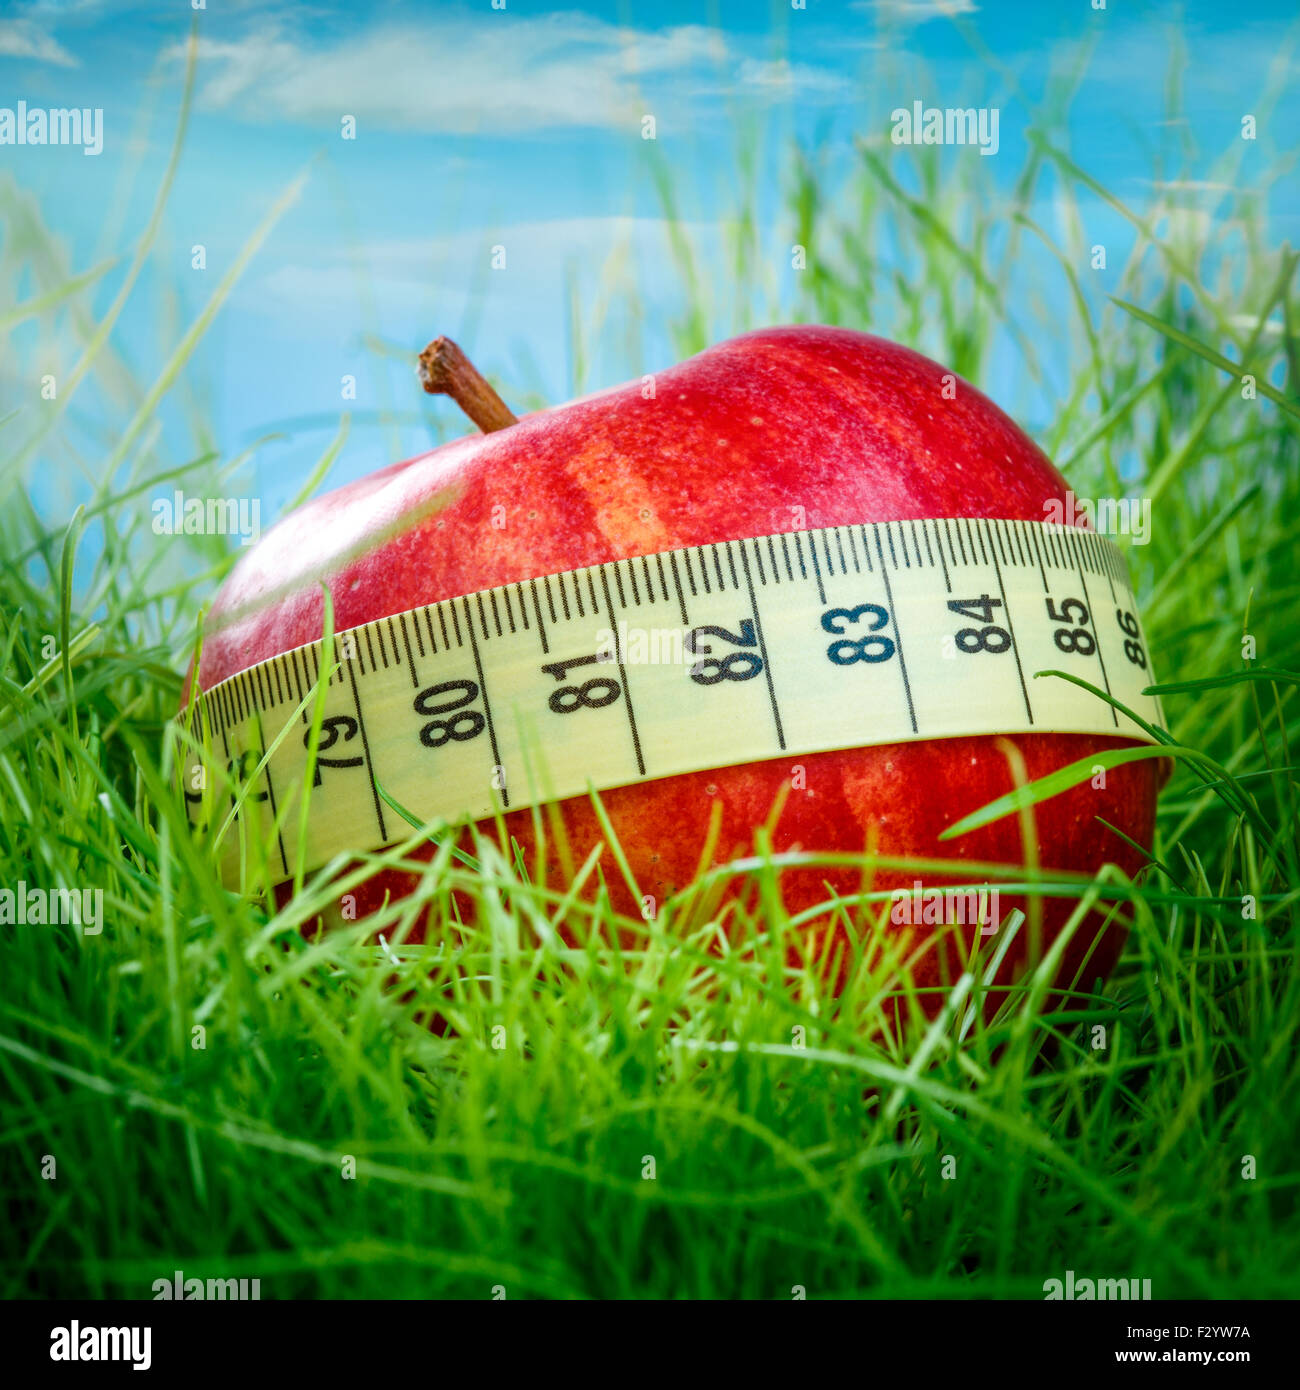 Pomme rouge sur l'herbe verte Banque D'Images